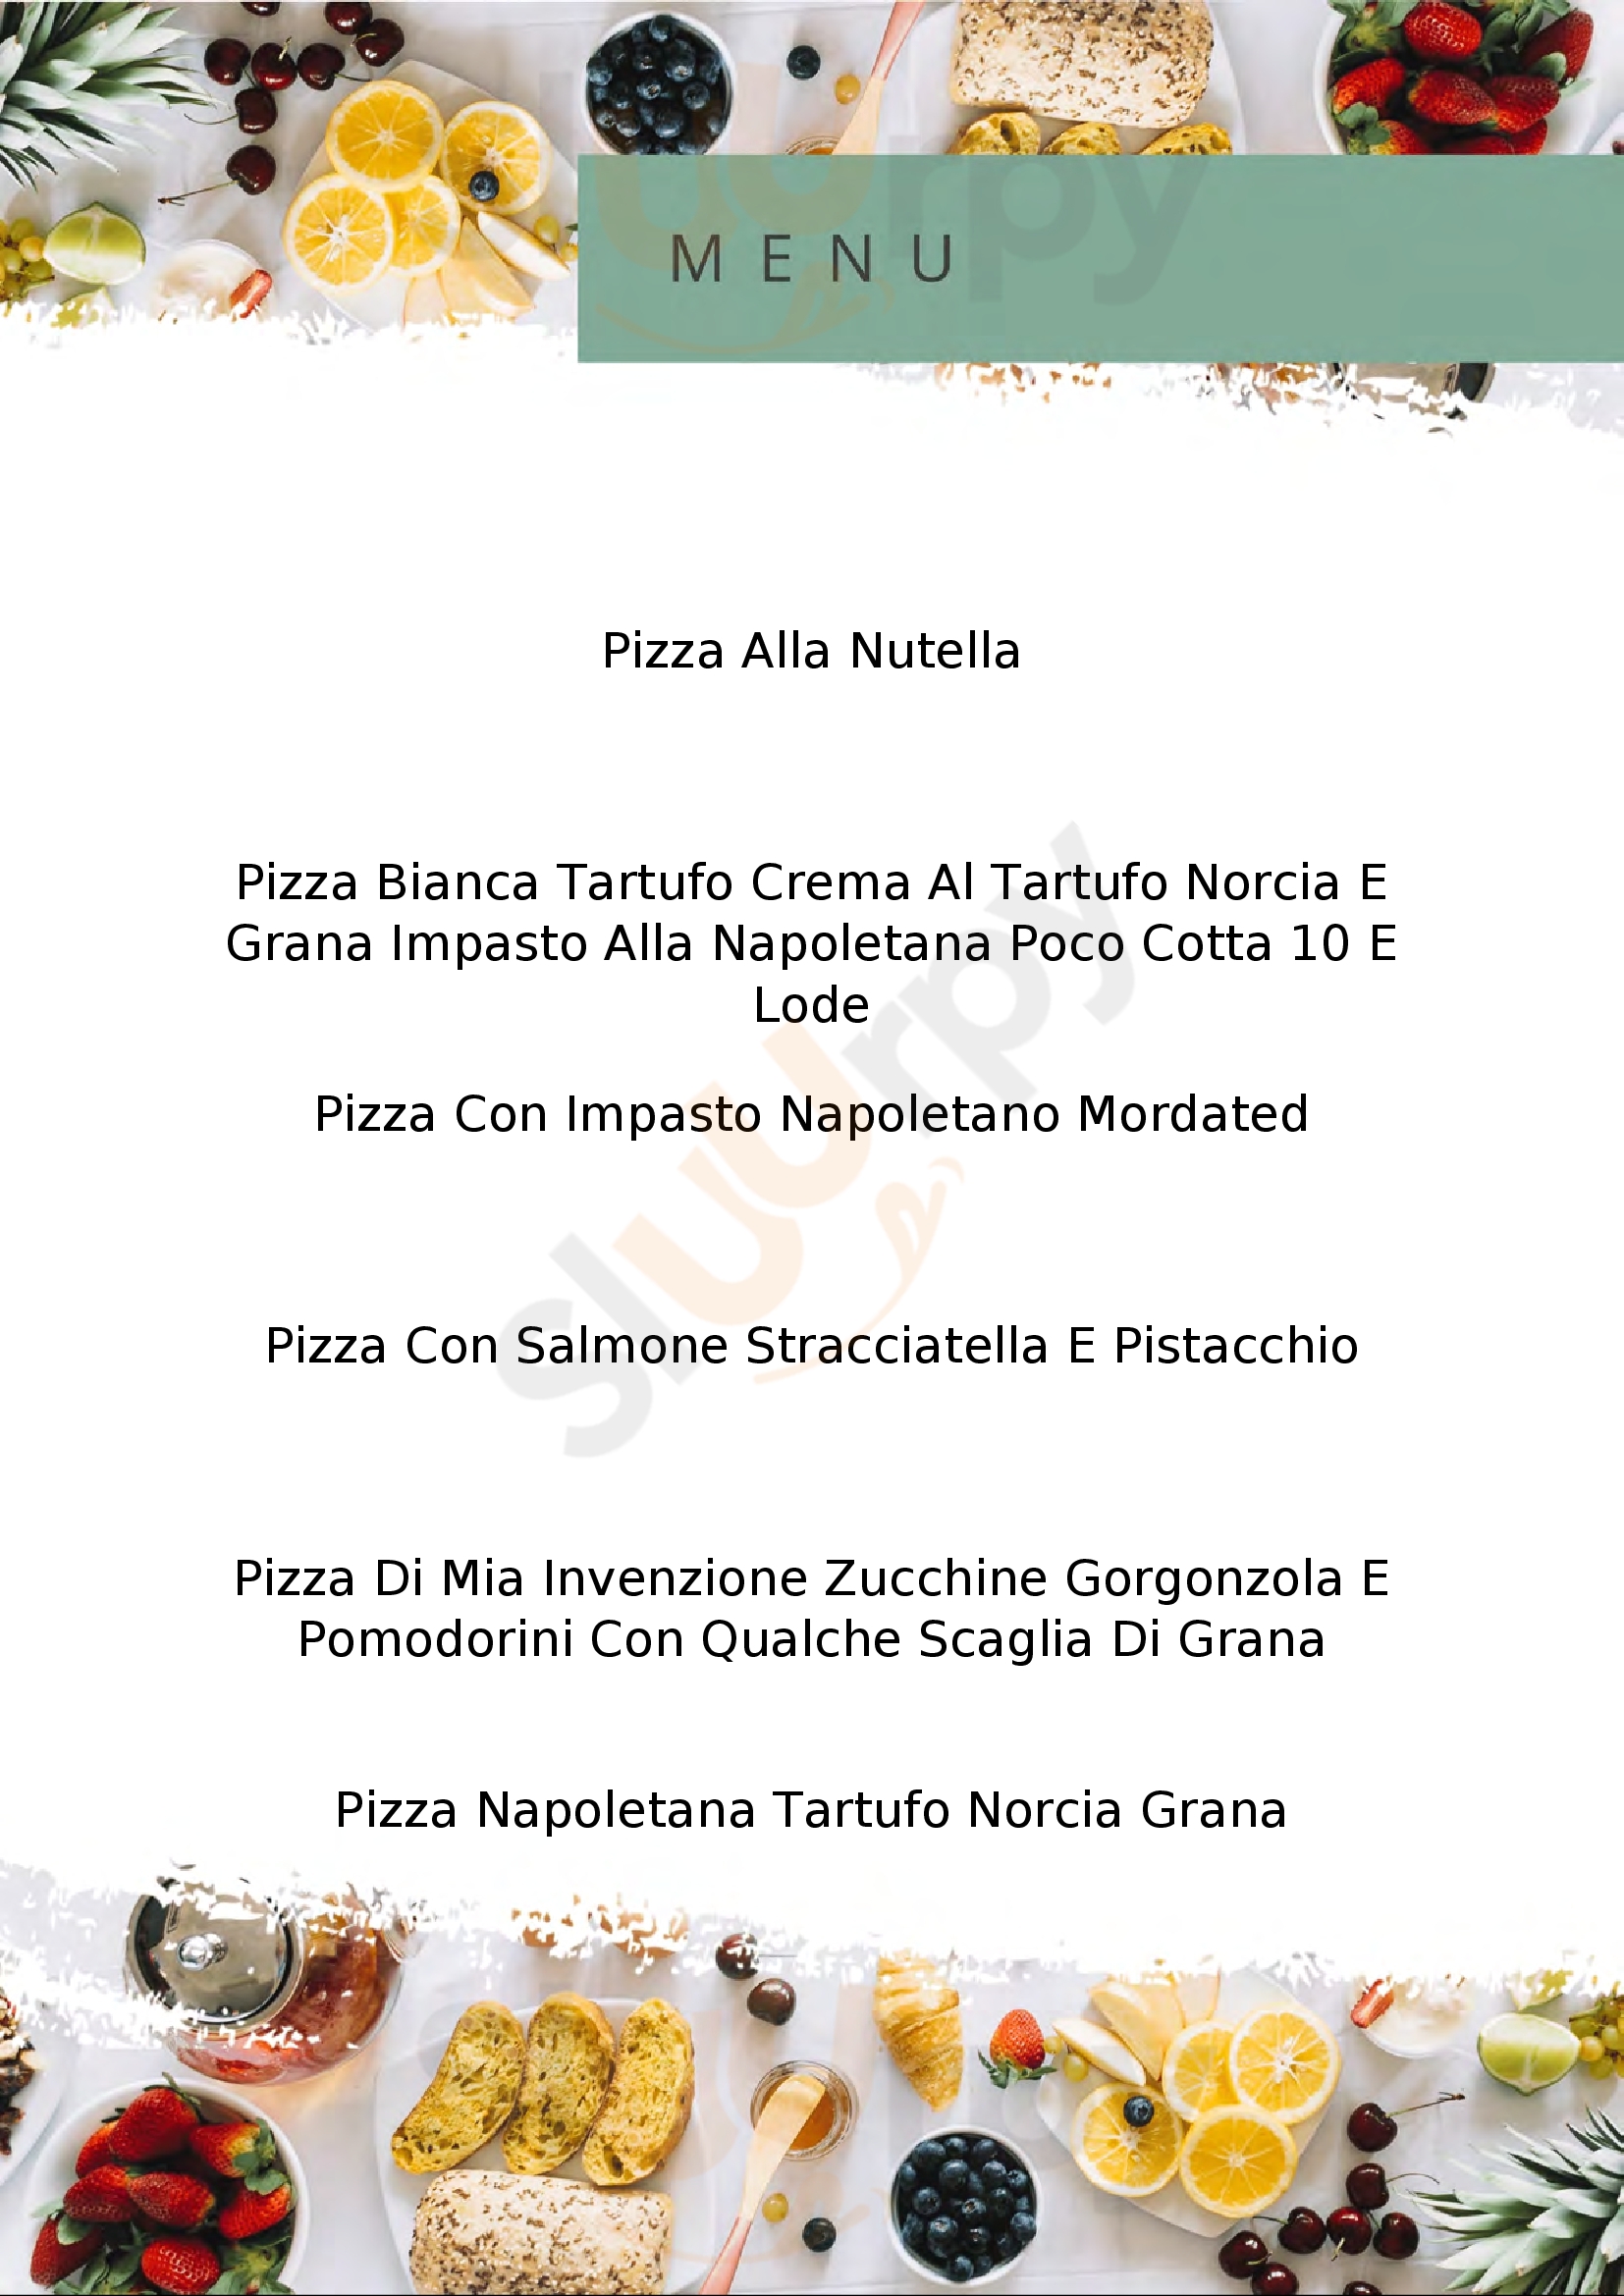 Pizzeria Lo Scugnizzo da Pasquale Molfetta menù 1 pagina